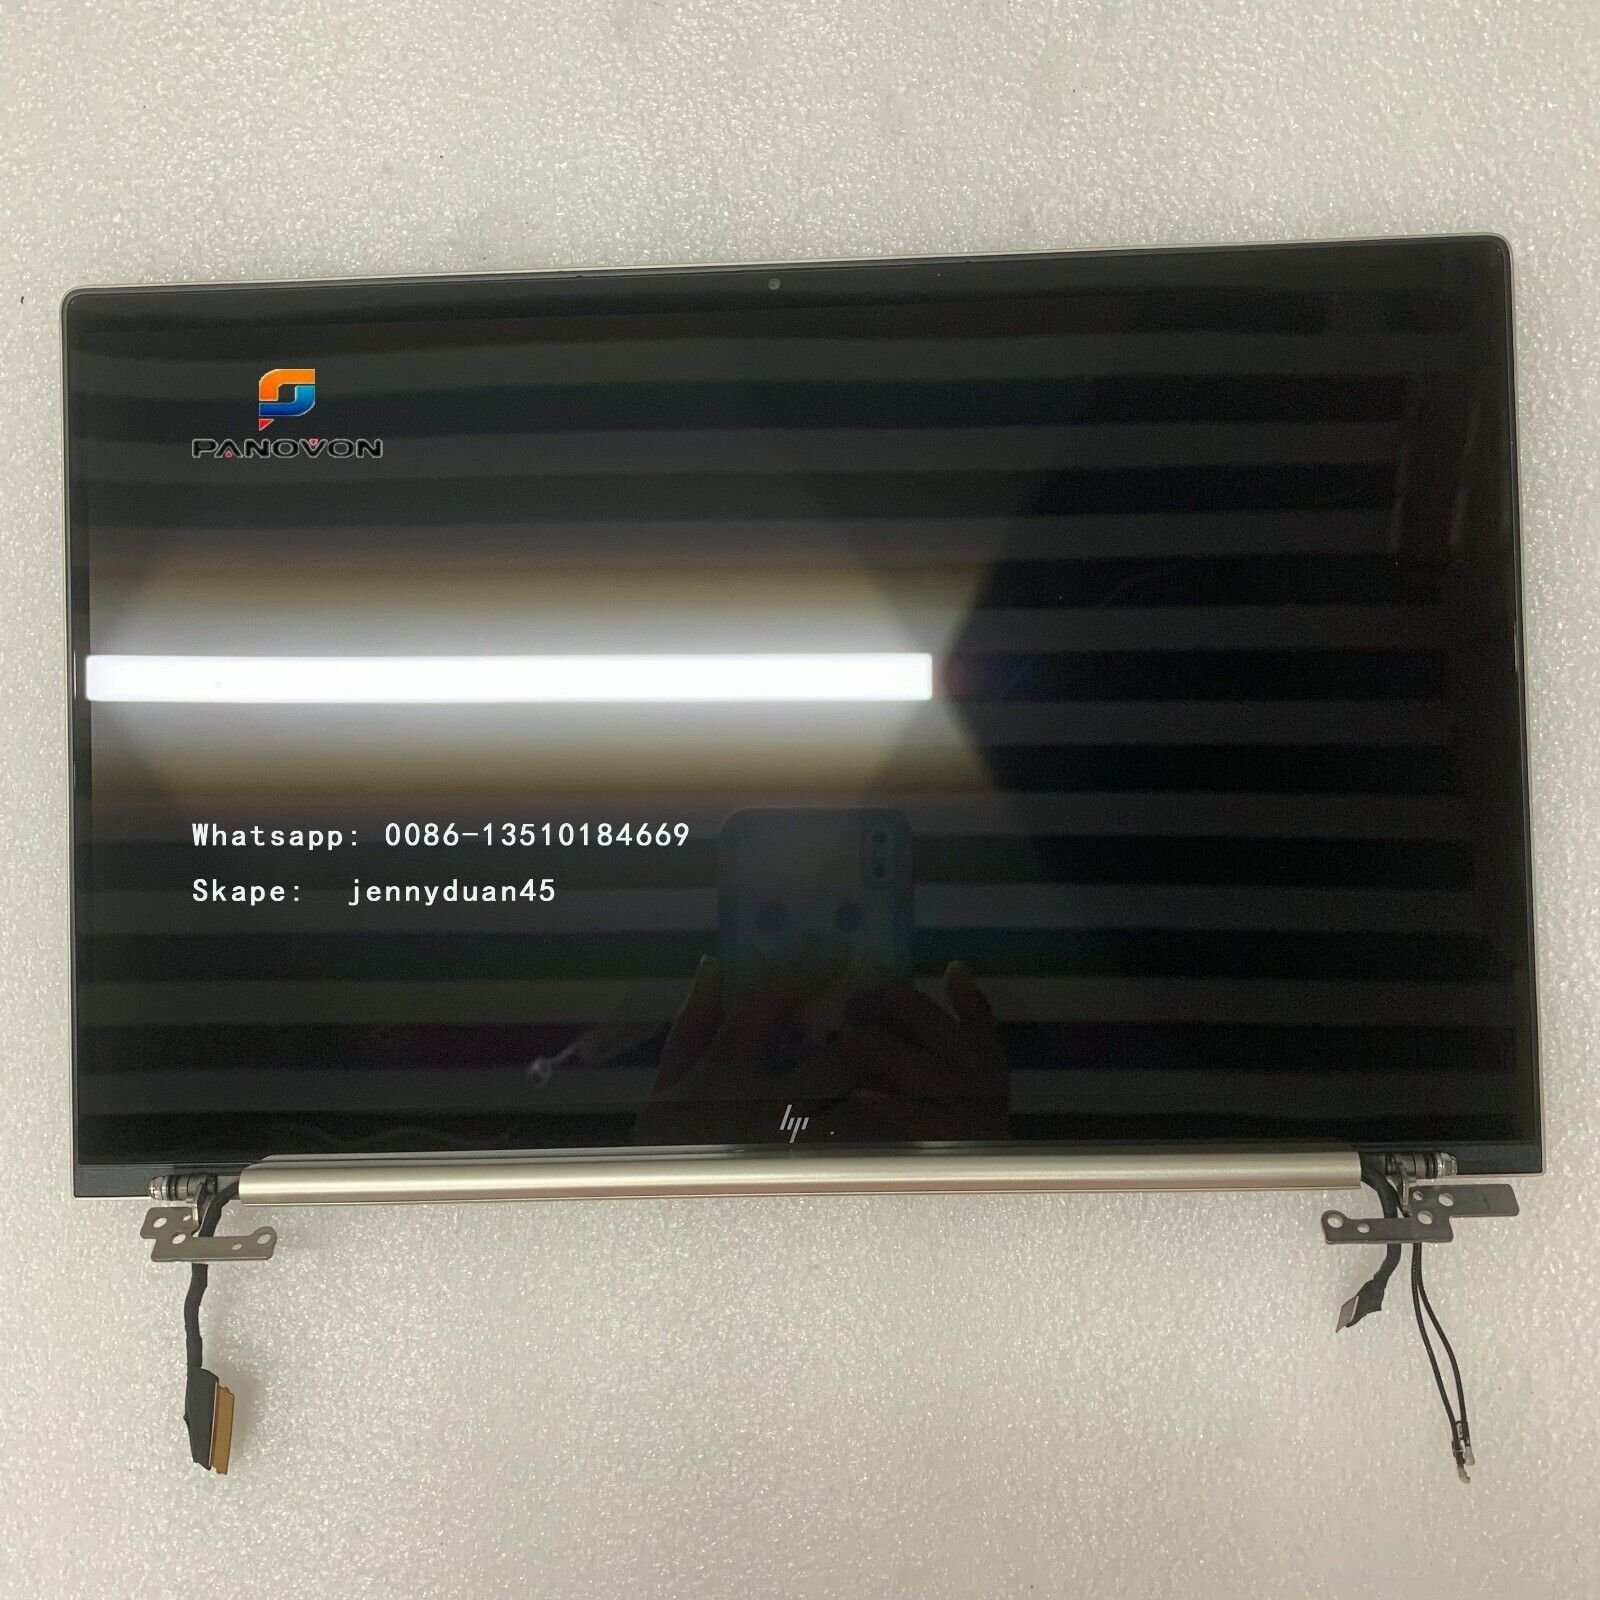 HP ENVY X360 13-BA1513TX 1552TU L96788-001 13.3 FHD GOLD LCD SCREEN HINGE UP